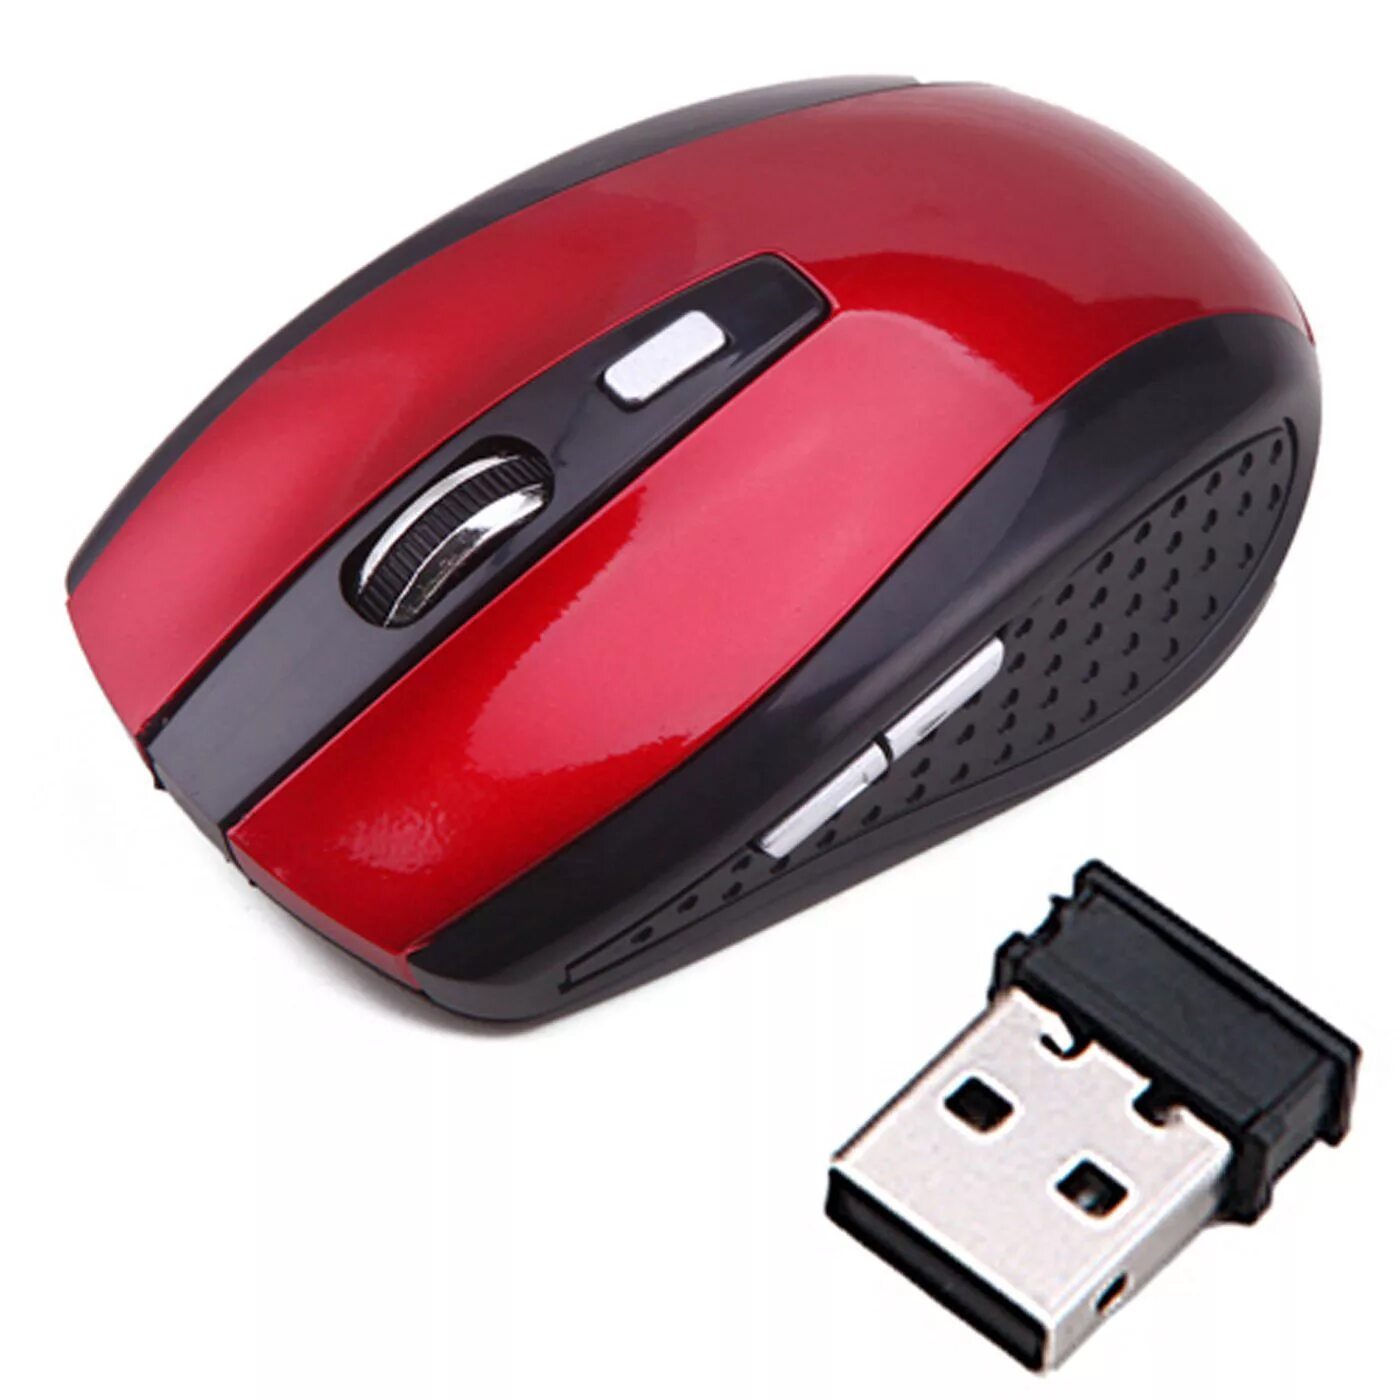 Беспроводная мышь Microsoft Wireless Optical Mouse 2000. Беспроводная мышь Microsoft Bluetooth model 1062. ДНС мышь беспроводная блютуз. Мышка aietoo Modell no:e8 2.4g Wireless Mouse.